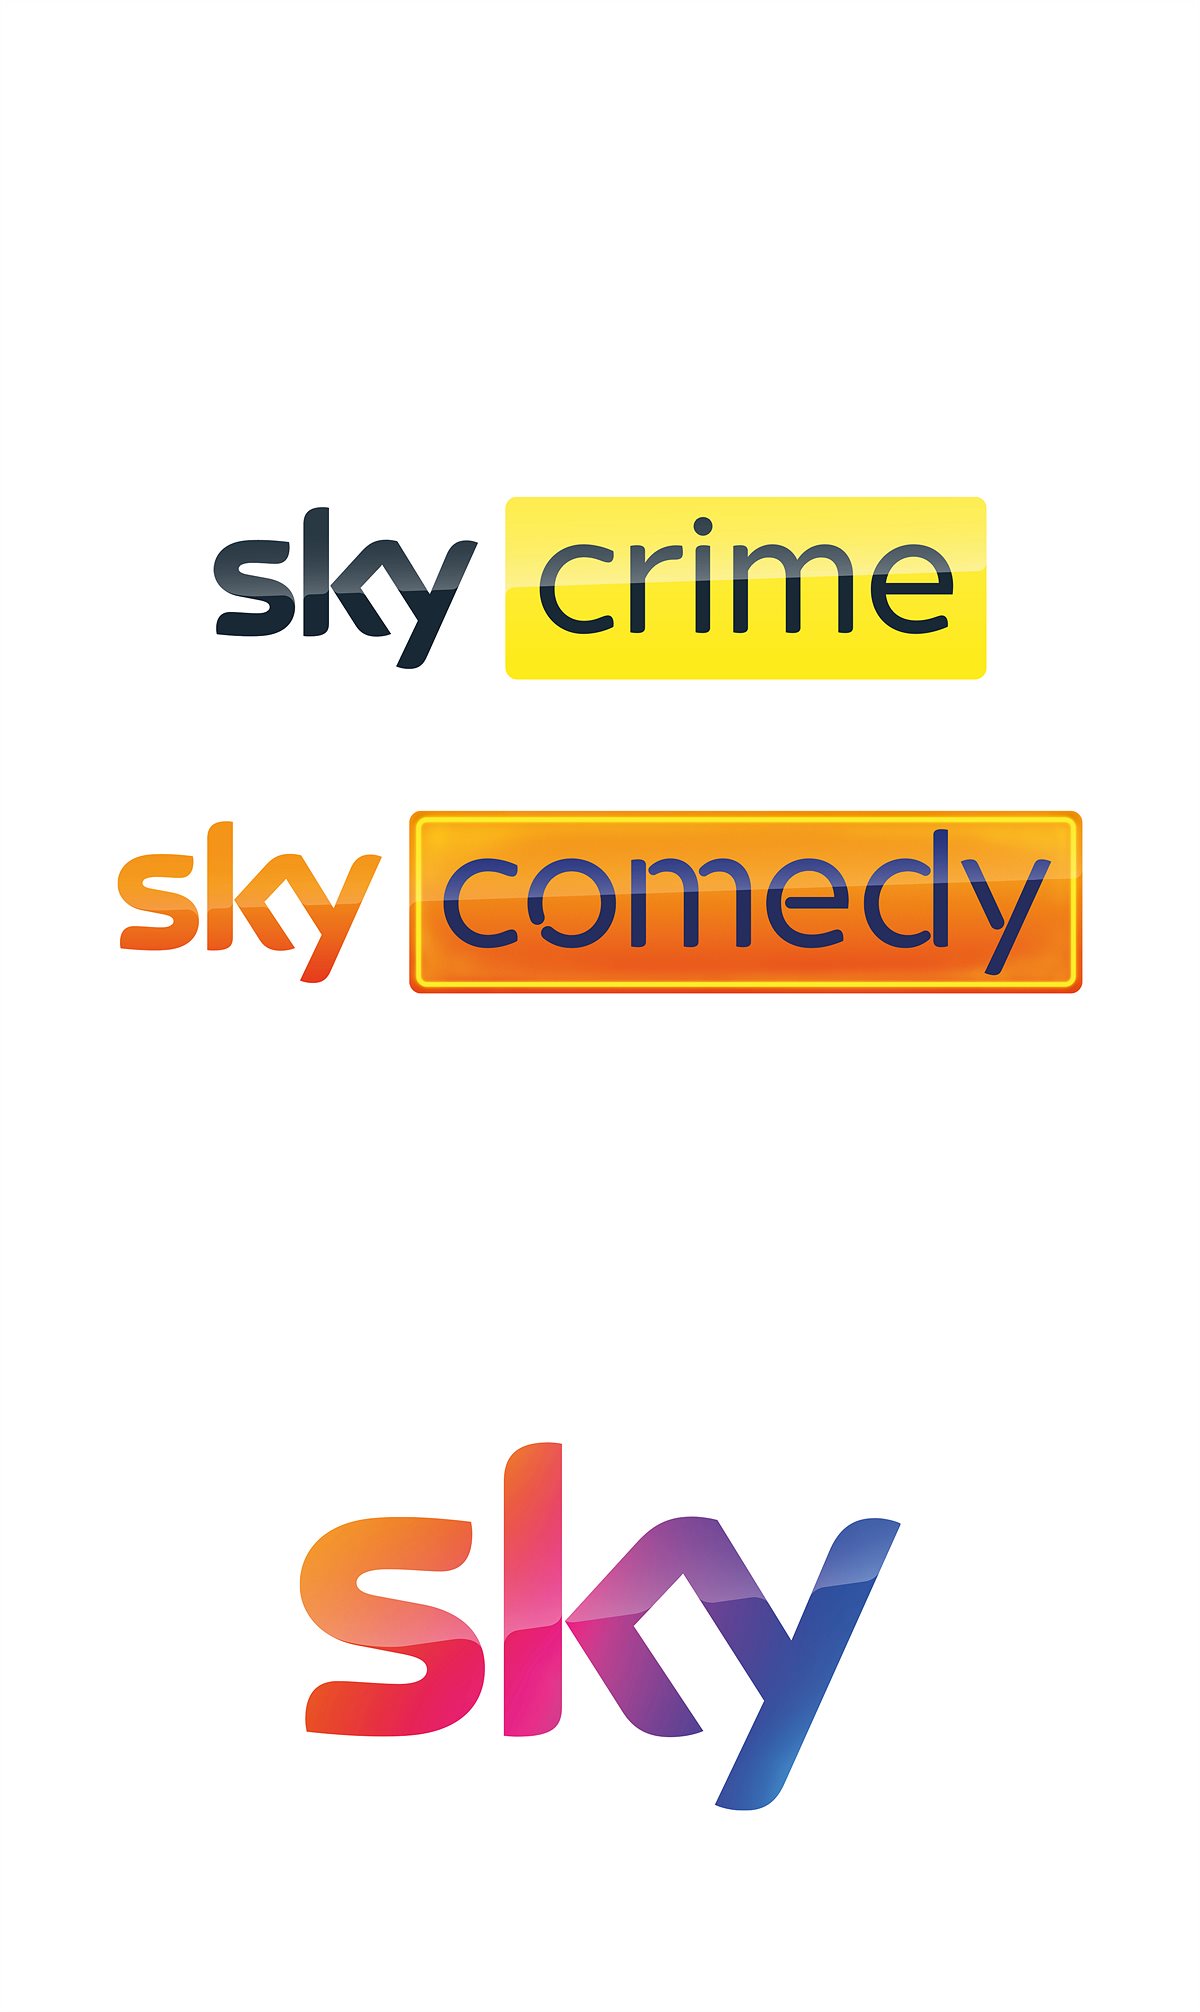 Sky_Crime_Comedy